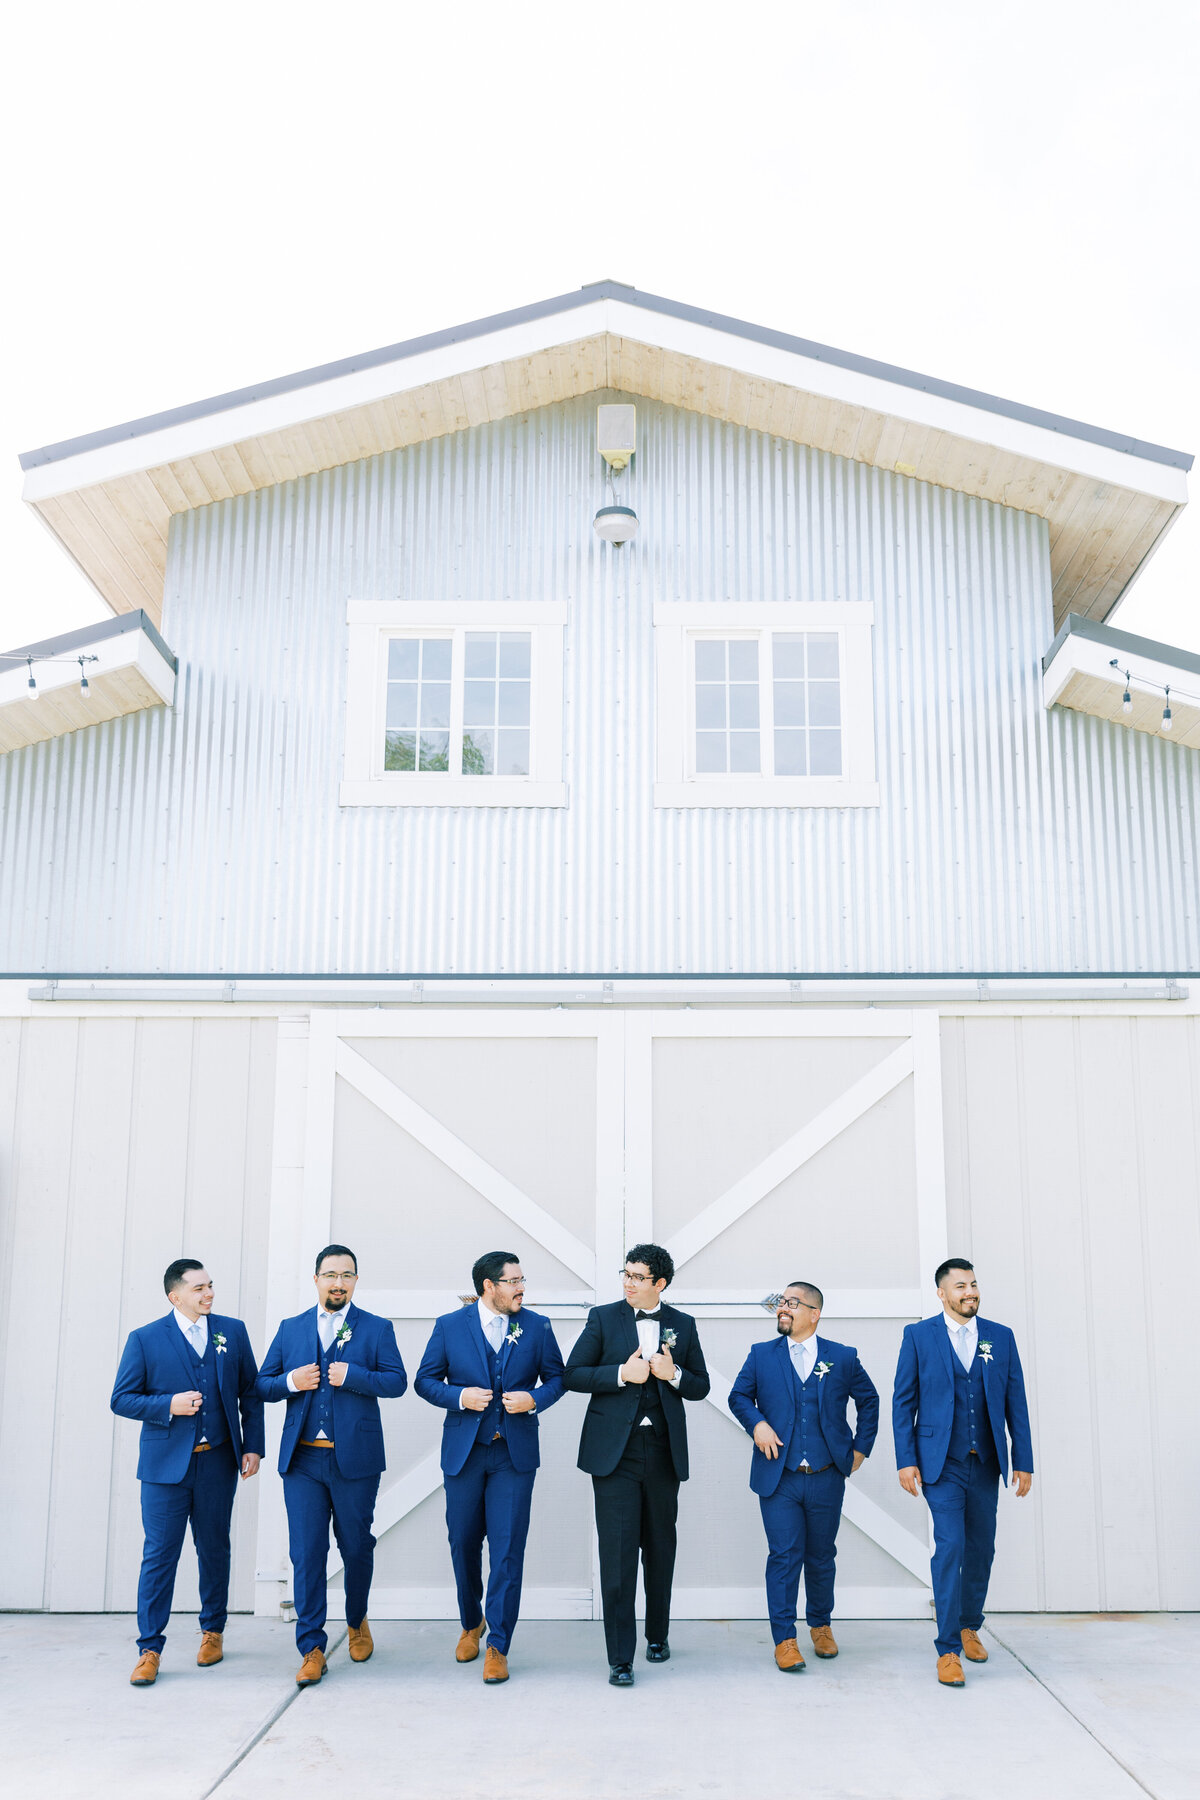 groom and groomsmen in navy suits at barn wedding venue